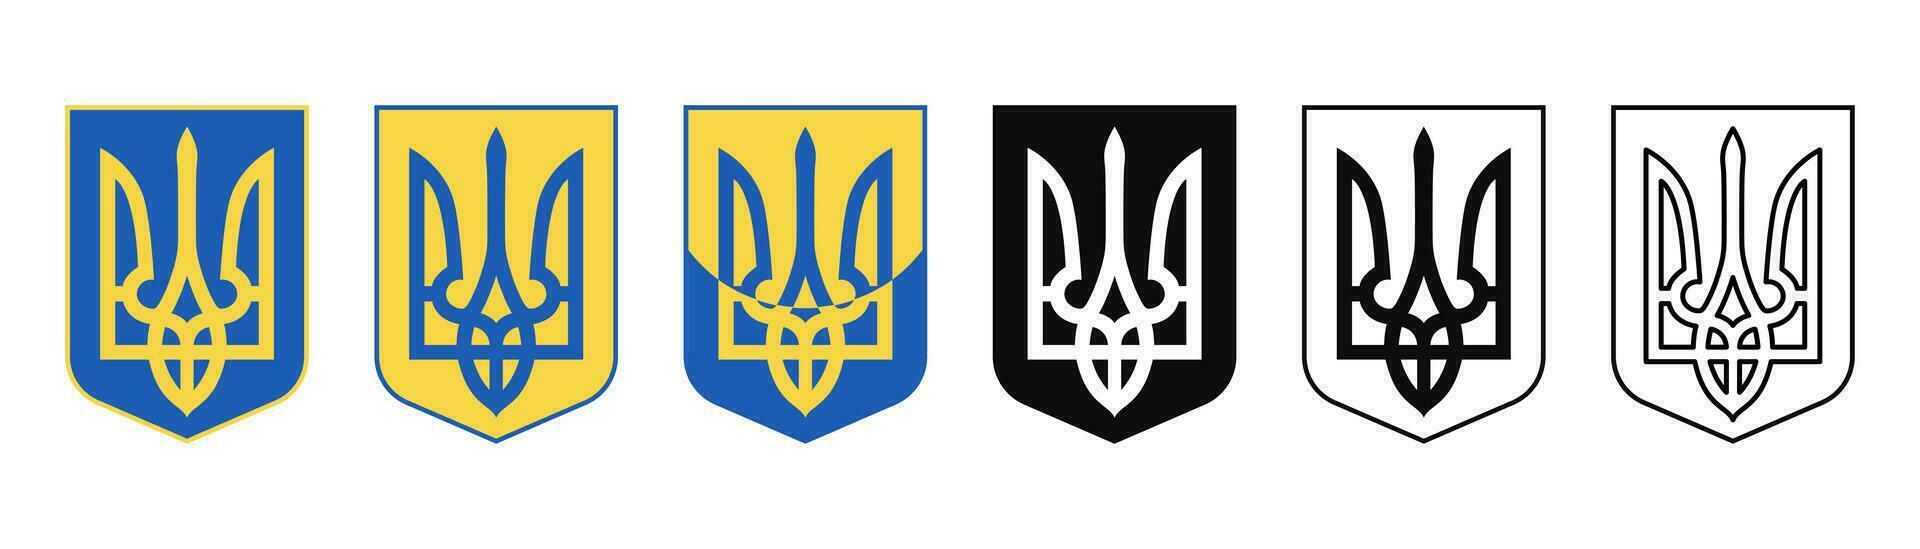 Ucrania tridente íconos colocar. tridente símbolo en Ucrania. ucranio emblema. tridente con proteger símbolo. azul y amarillo bandera. valores vector ilustración